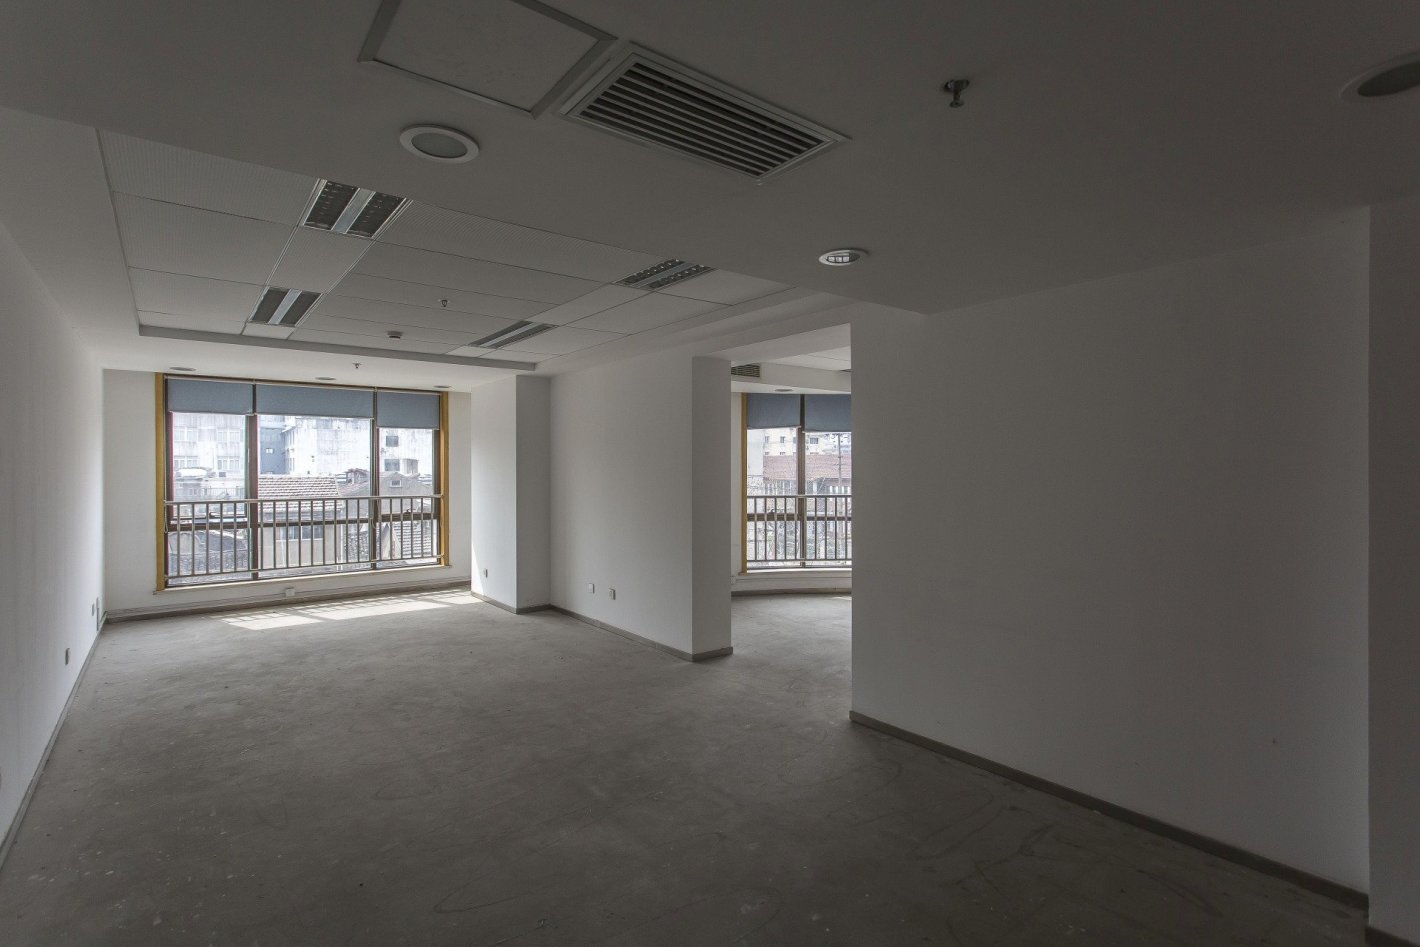 聚源大厦153平米办公室出租-租金价格3.24元/m²/天